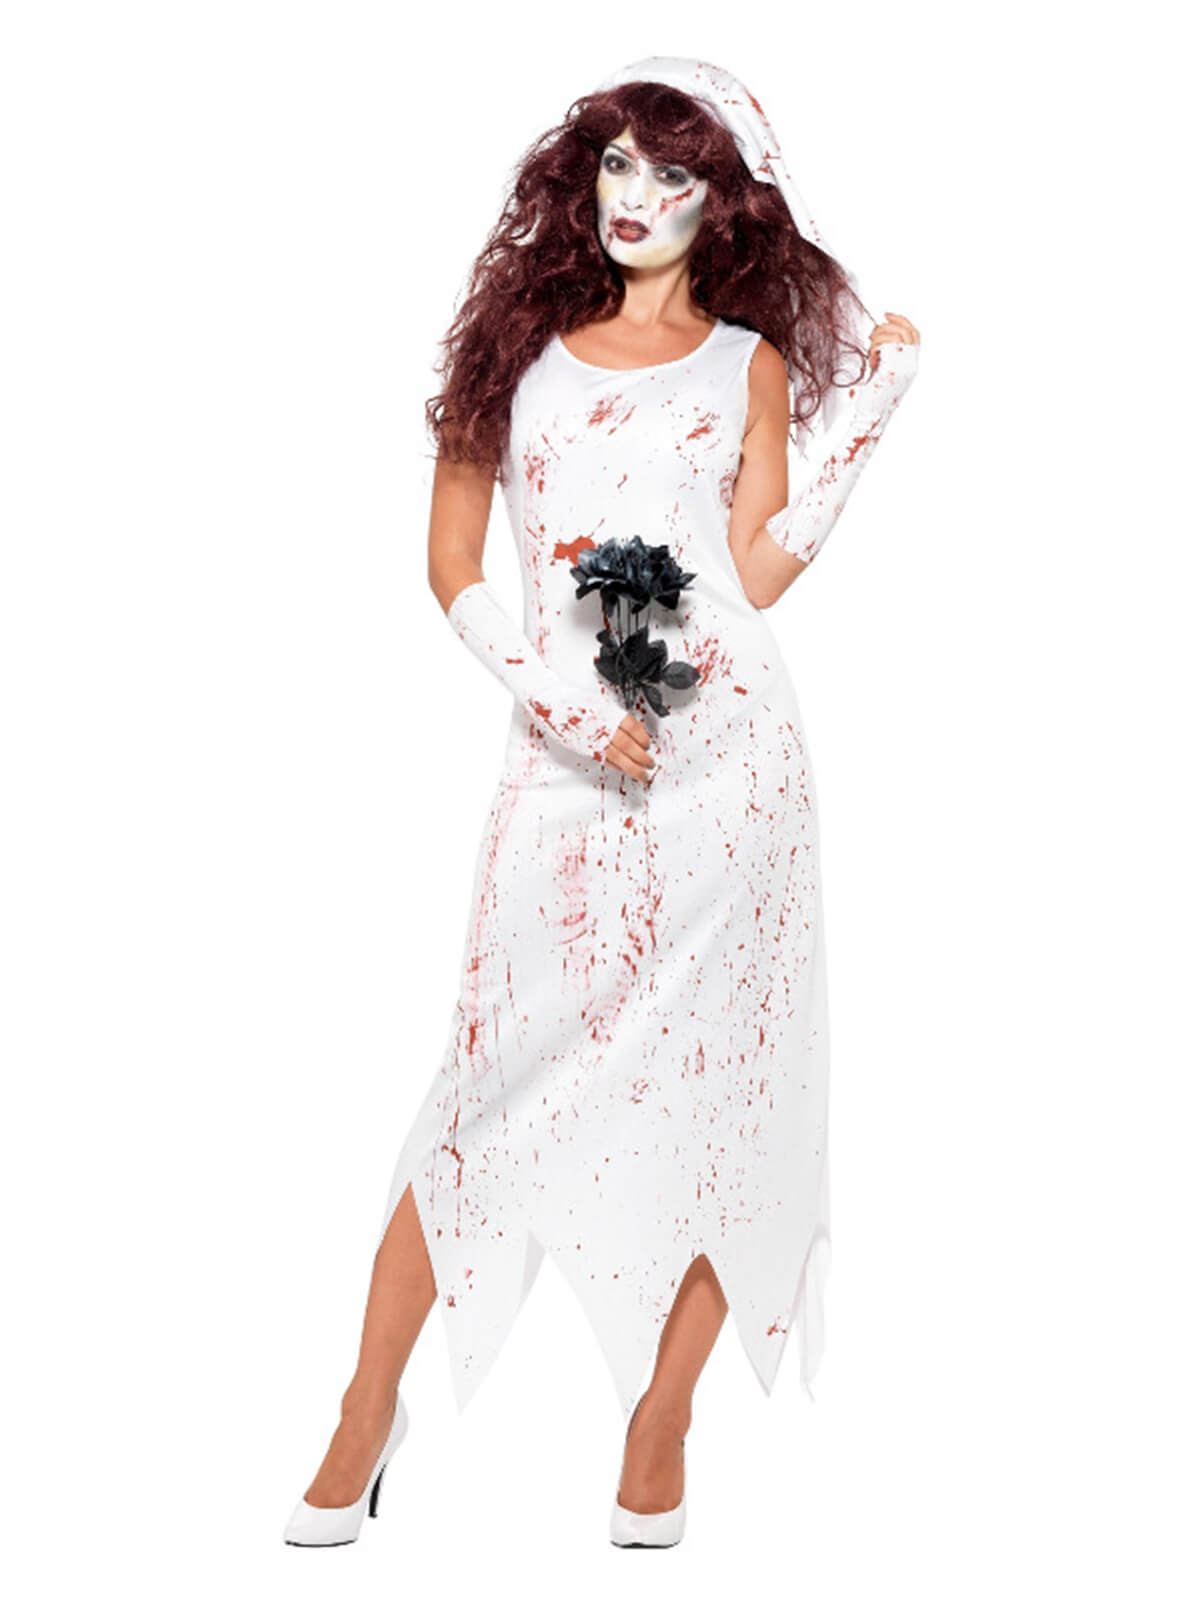 Zombie Bride Halloween Costume, White